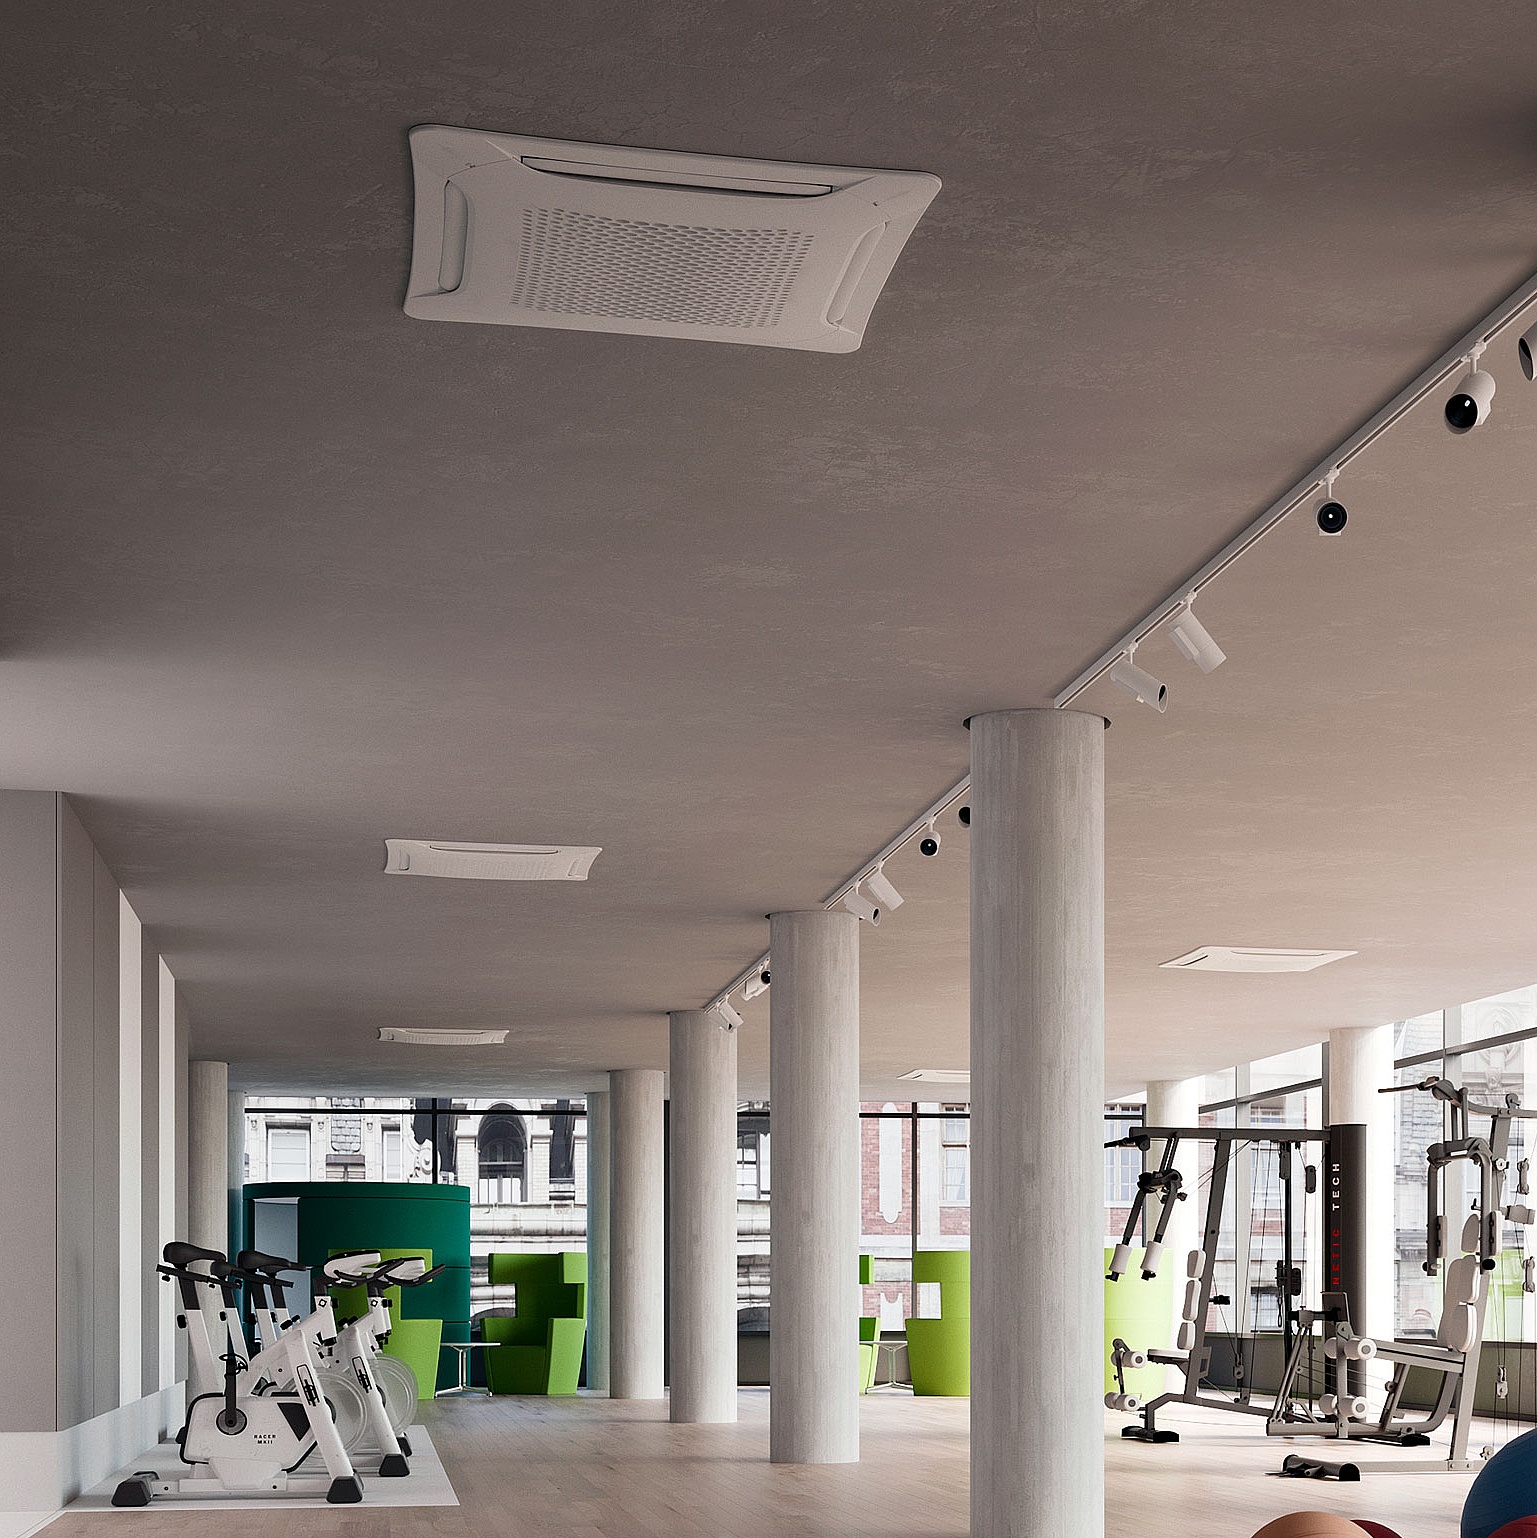 Фанкойлы Arbonia в виде потолочных кассет – используются в фитнес-студиях и спортивных сооружениях